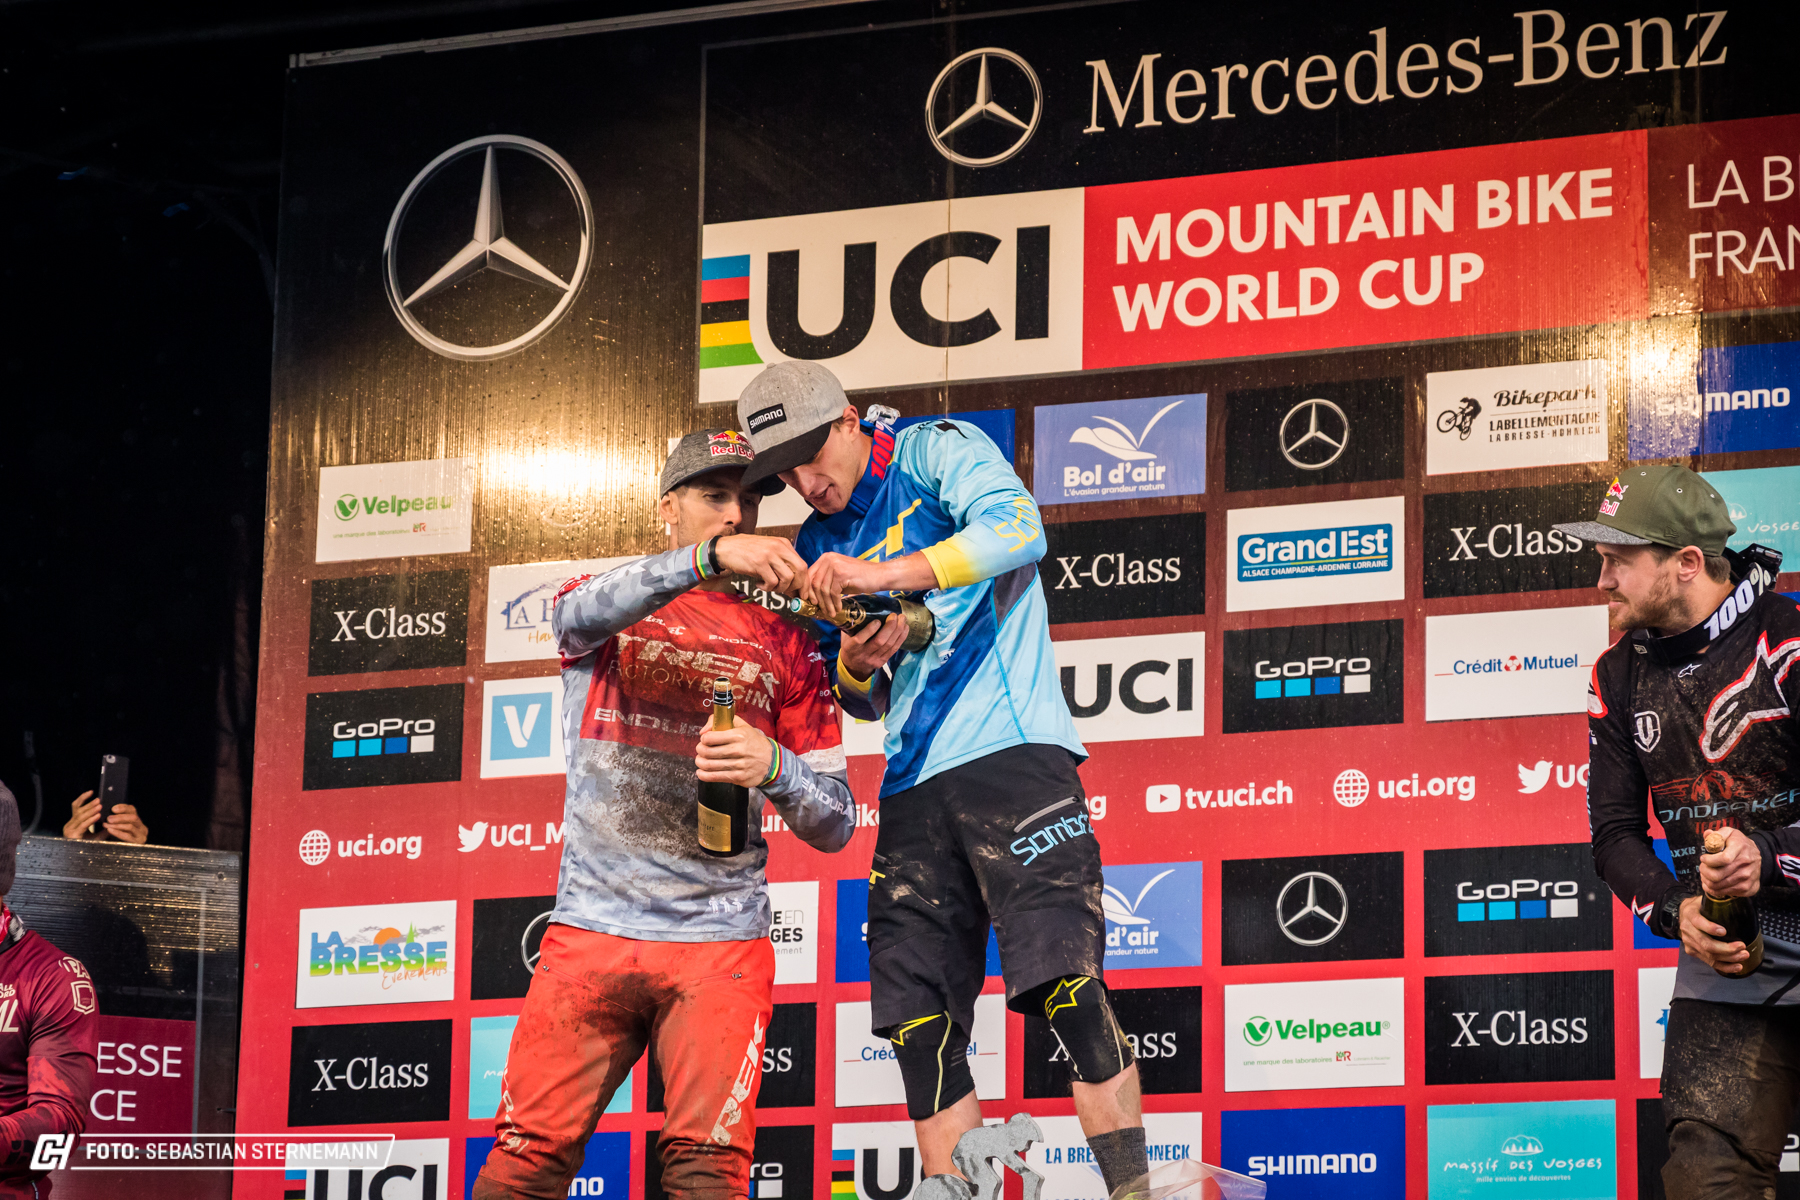 UCI Downhill World Cup La Bresse 2018